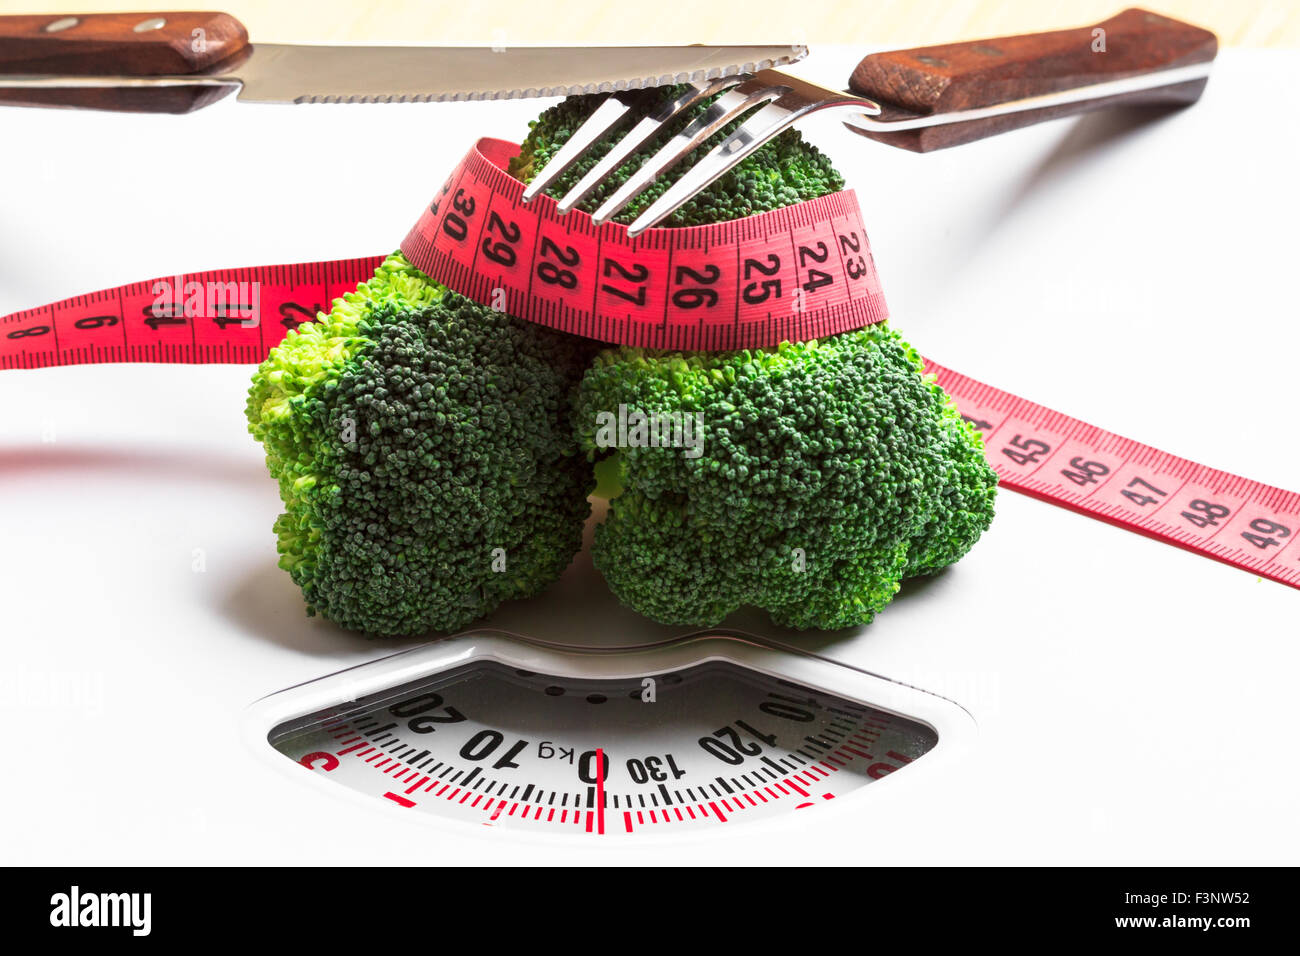 Ernährung gesunde Ernährung Gewicht Steuerungskonzept. Closeup grünen Brokkoli Mess Band und Gabel Messer auf weißen Schuppen Stockfoto